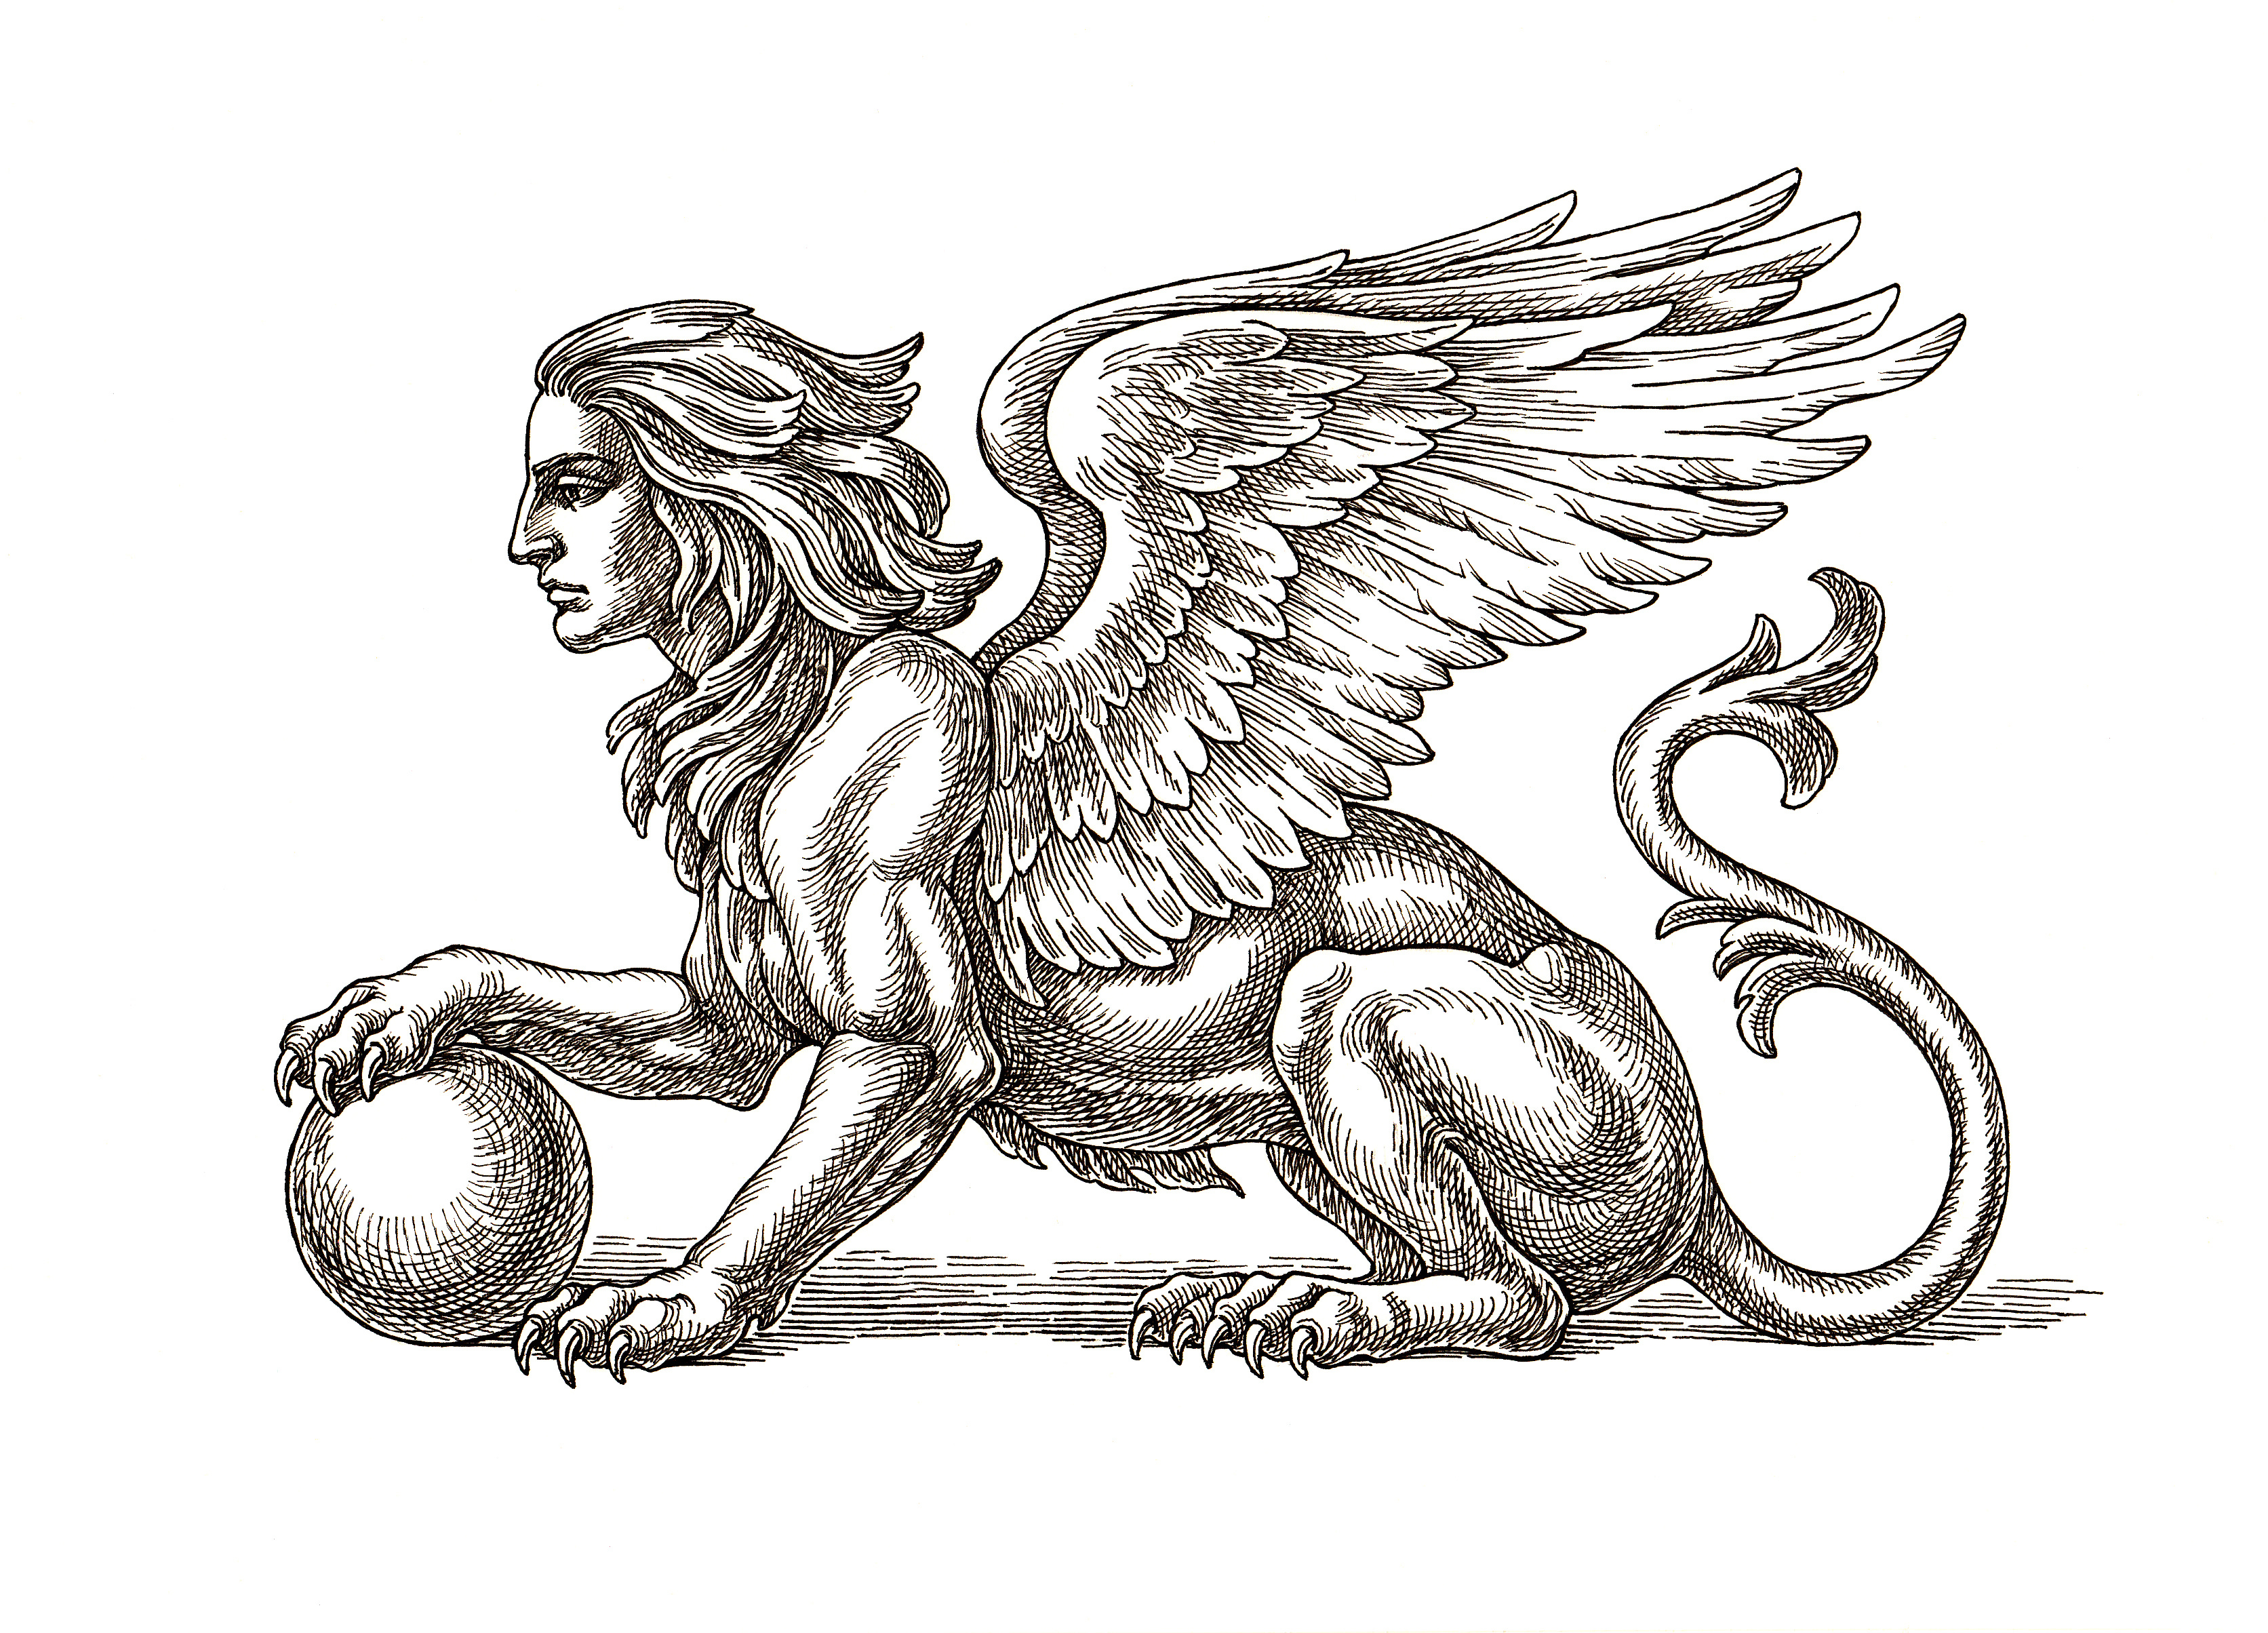 Desen original cu cerneală și stilou, Sfinxul înaripat pe fond alb.